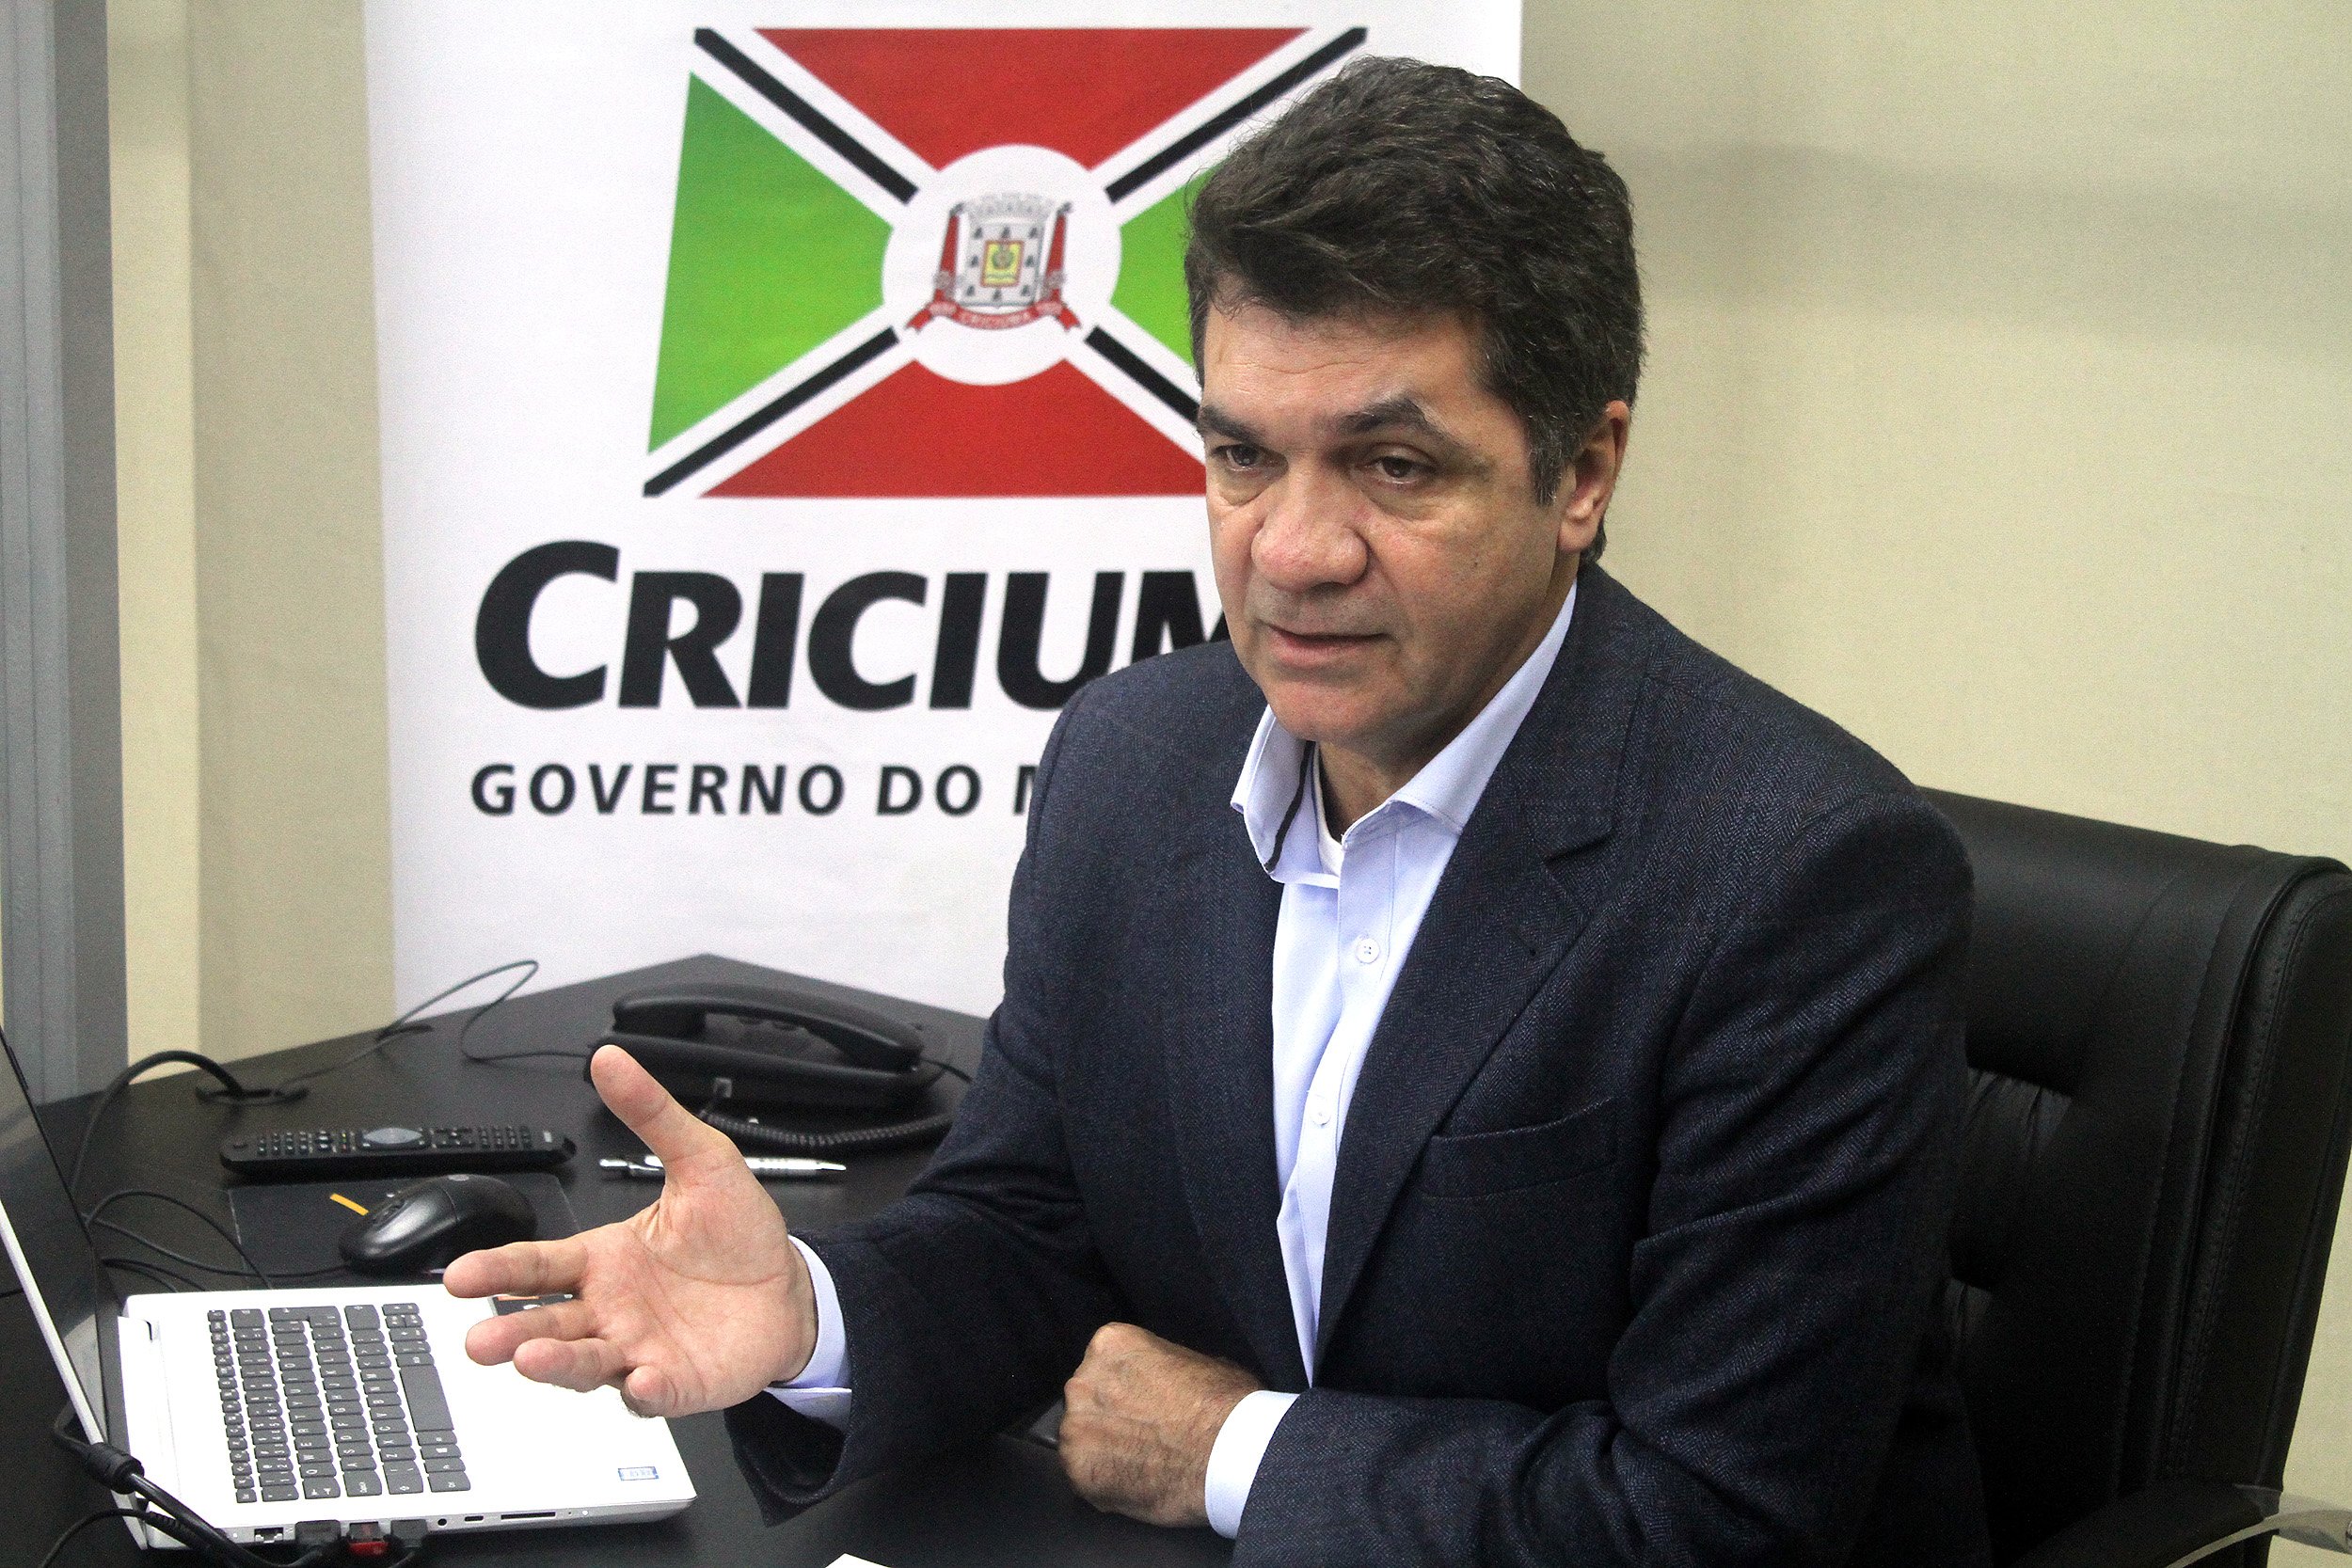 Clésio Salvaro, prefeito de Criciúma, testa positivo para Covid-19